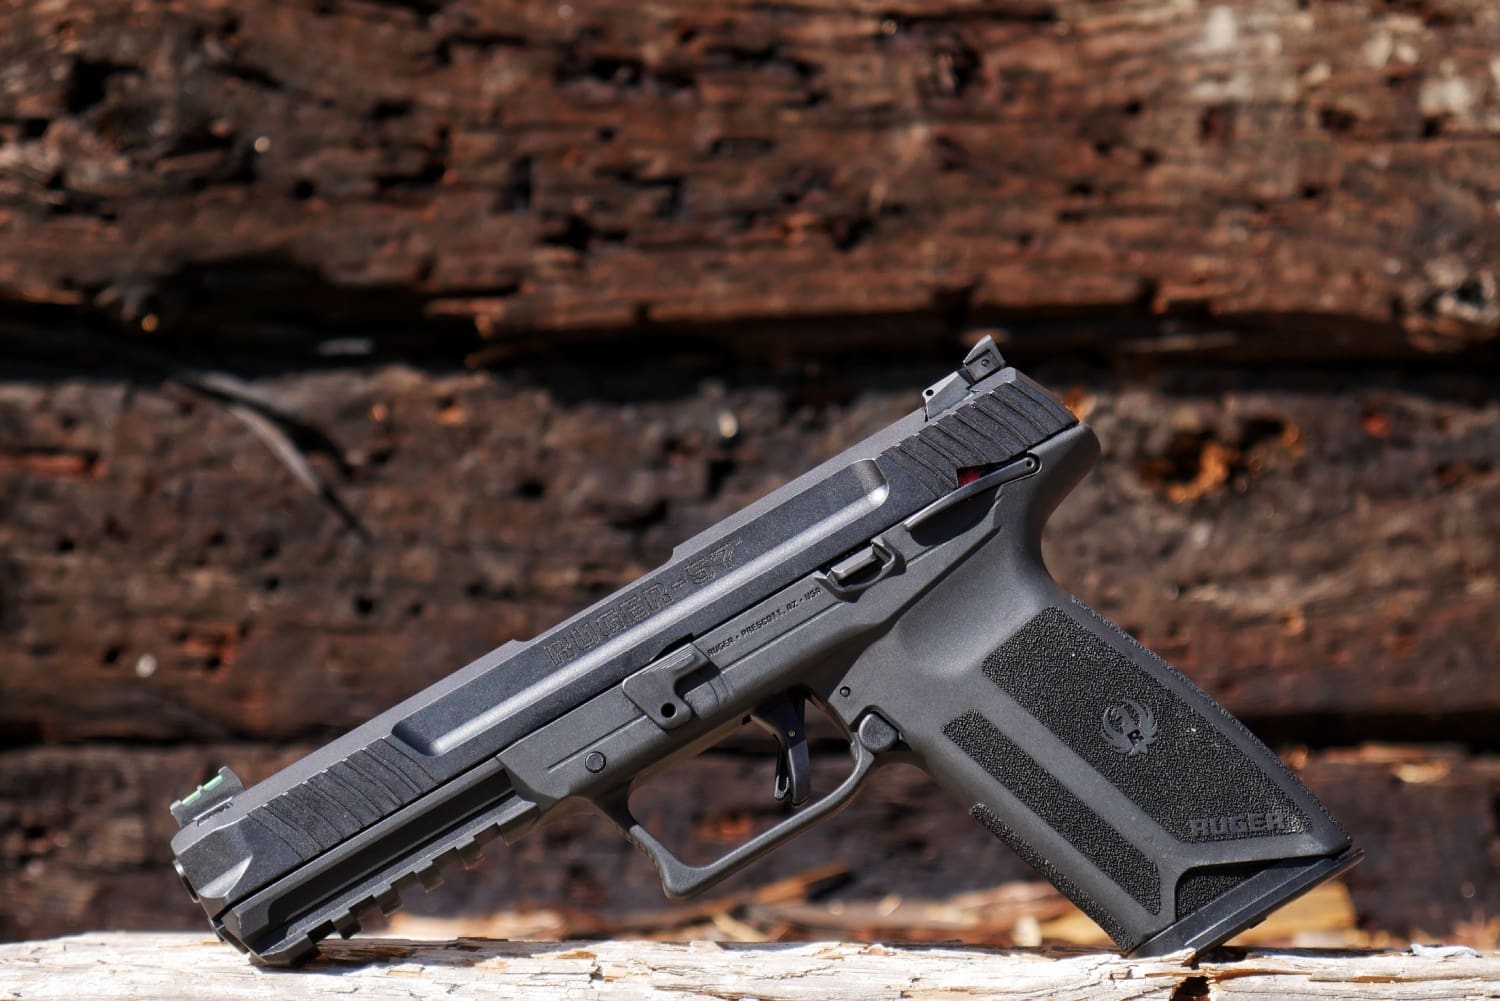 Ruger-57 5.7x28mm pistol